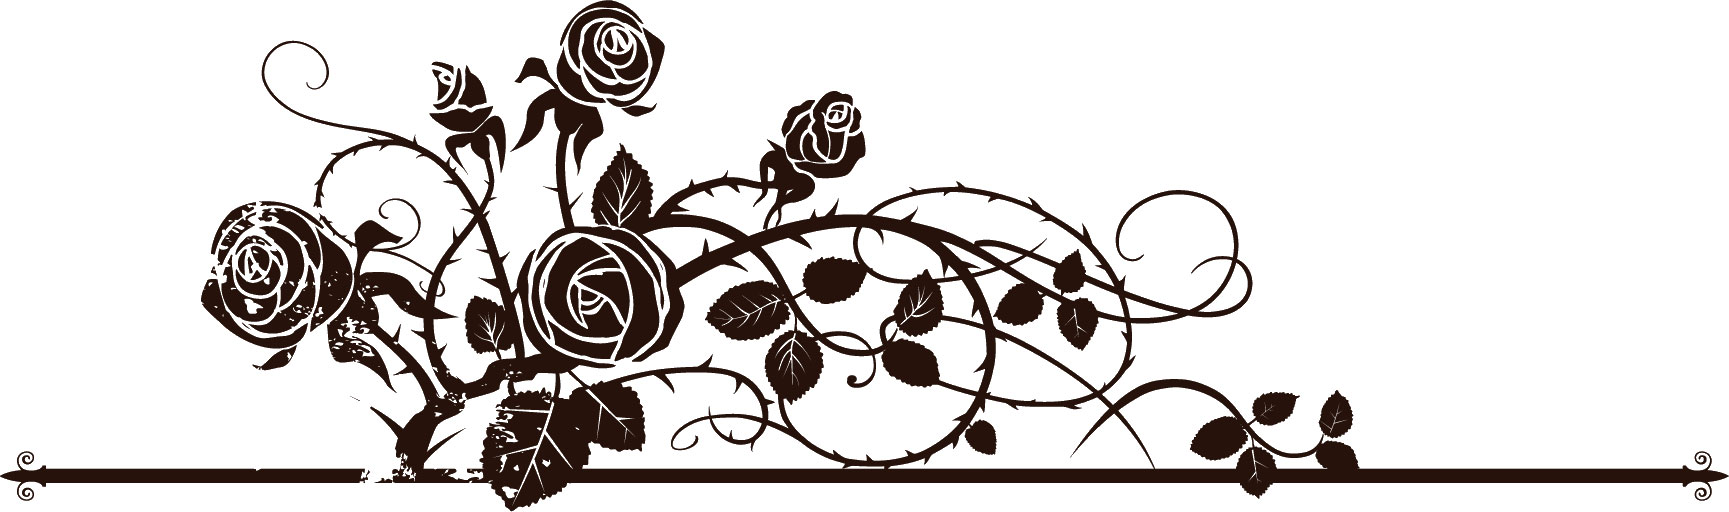 花のイラスト フリー素材 白黒 モノクロno 363 白黒 バラ模様